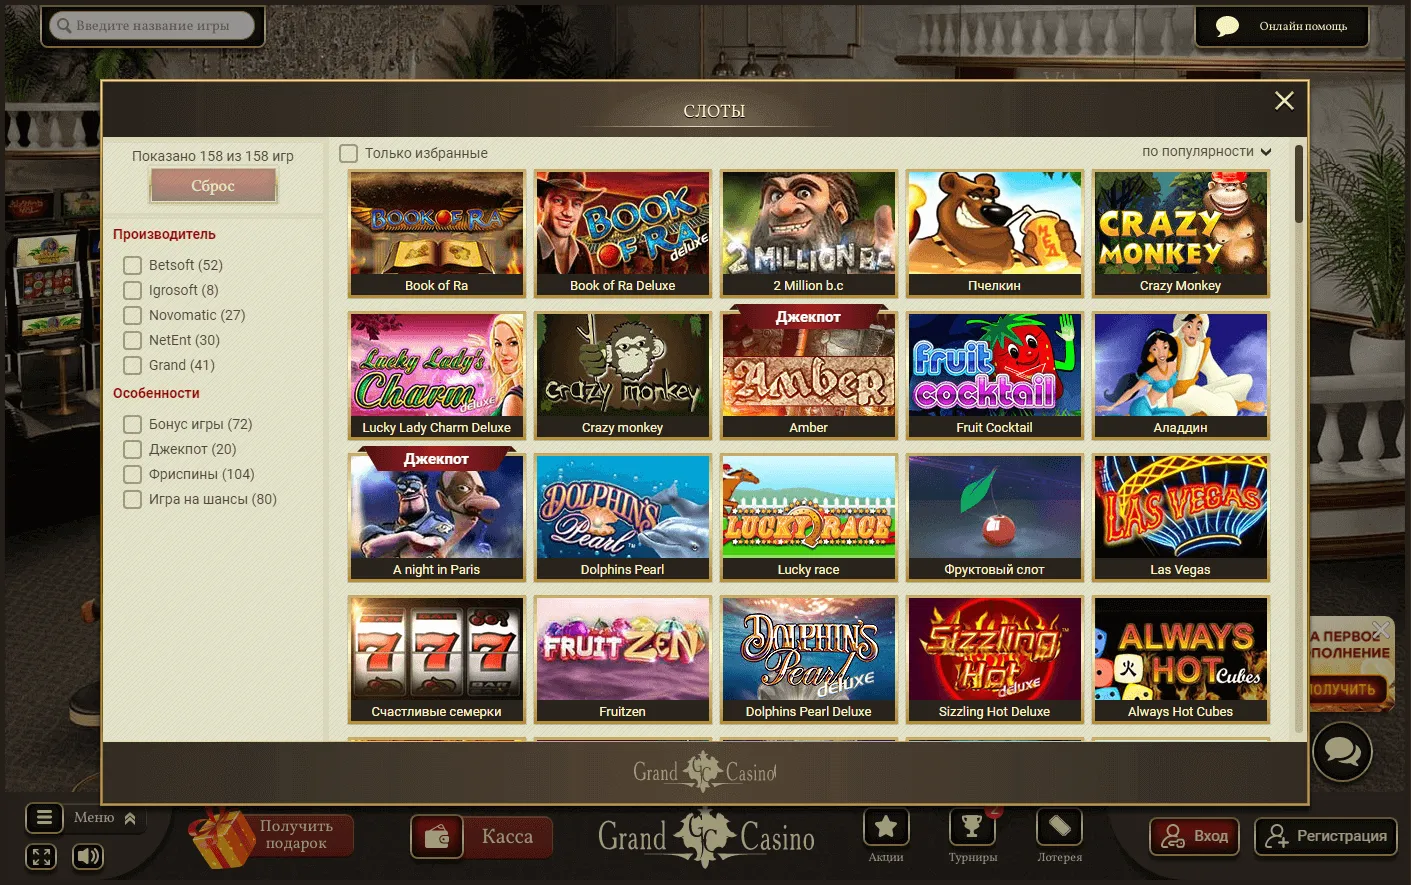 Grand casino slots